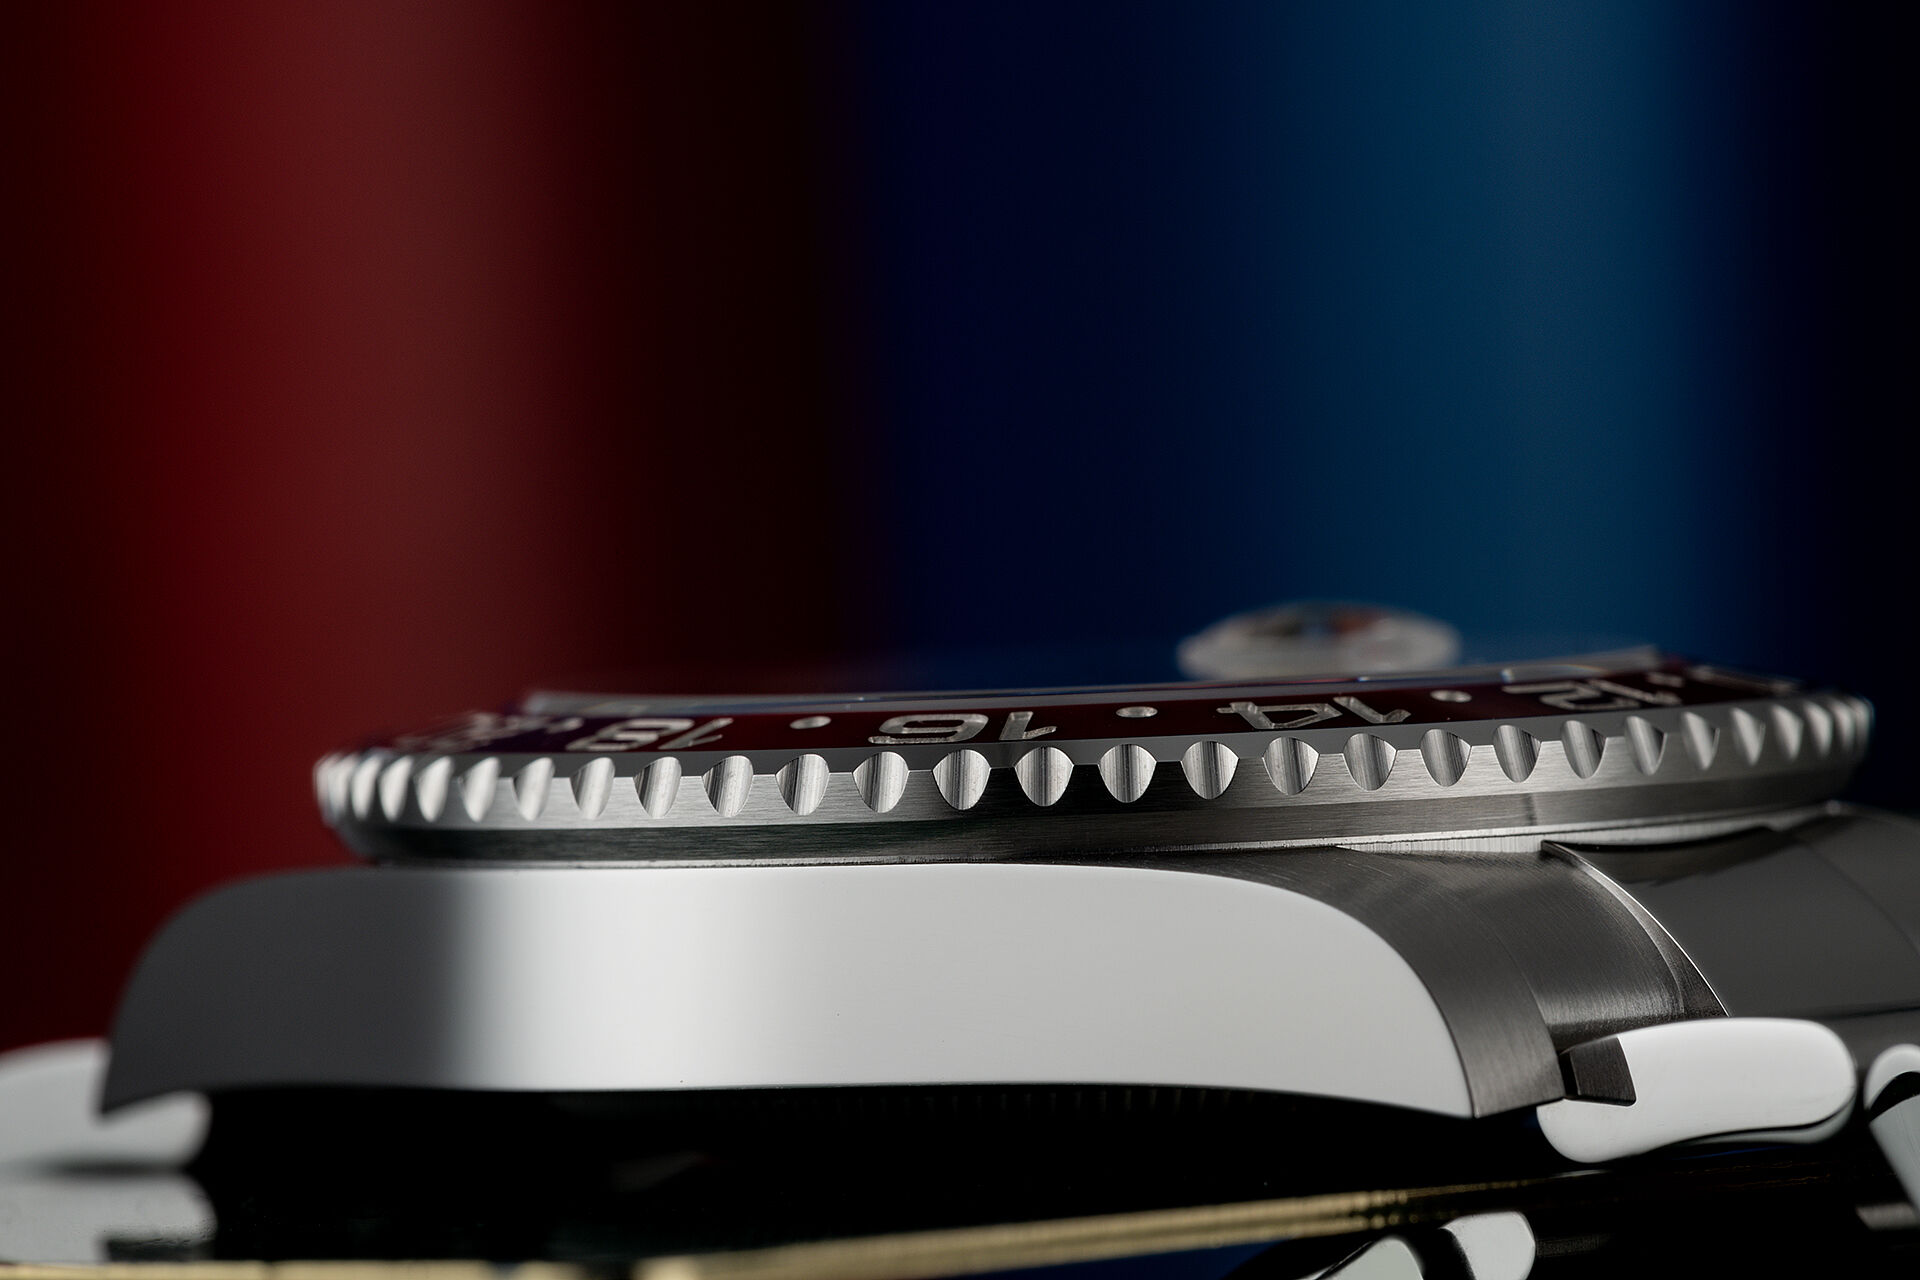 ref 126710BLRO | Rolex Warranty to 2027 | Rolex GMT-Master II